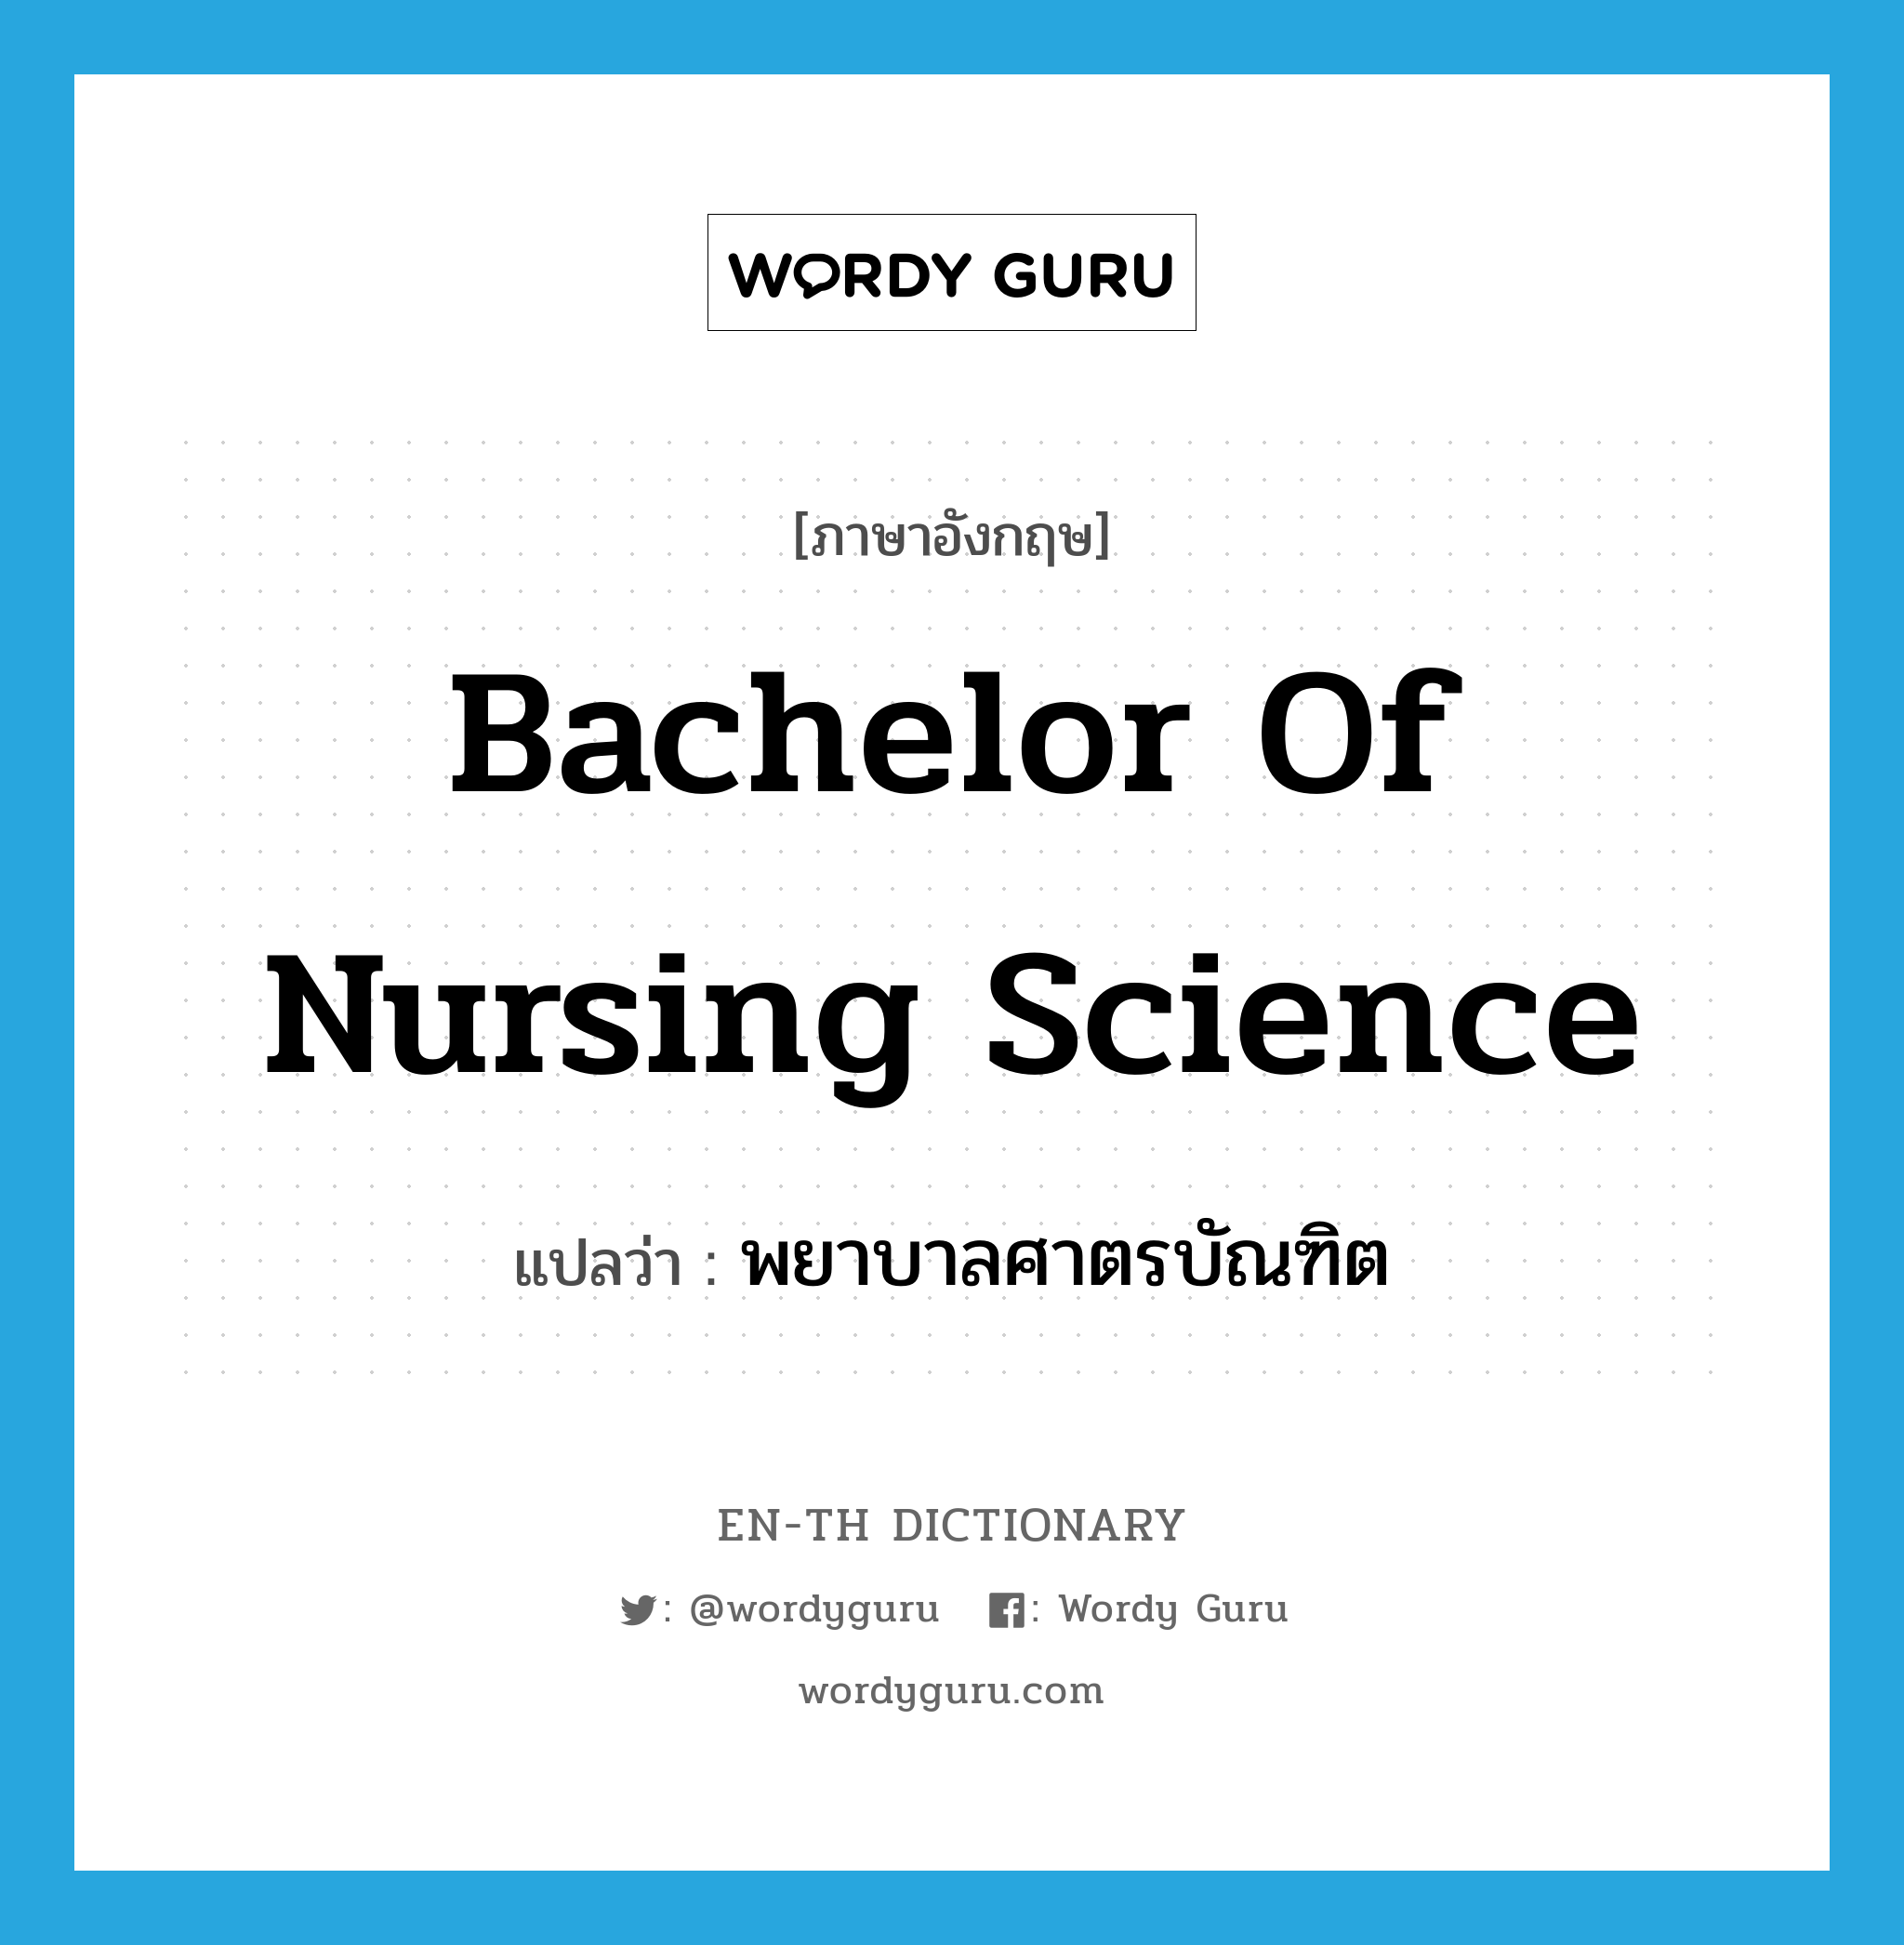 พยาบาลศาตรบัณฑิต ภาษาอังกฤษ?, คำศัพท์ภาษาอังกฤษ พยาบาลศาตรบัณฑิต แปลว่า Bachelor of Nursing Science ประเภท N หมวด N